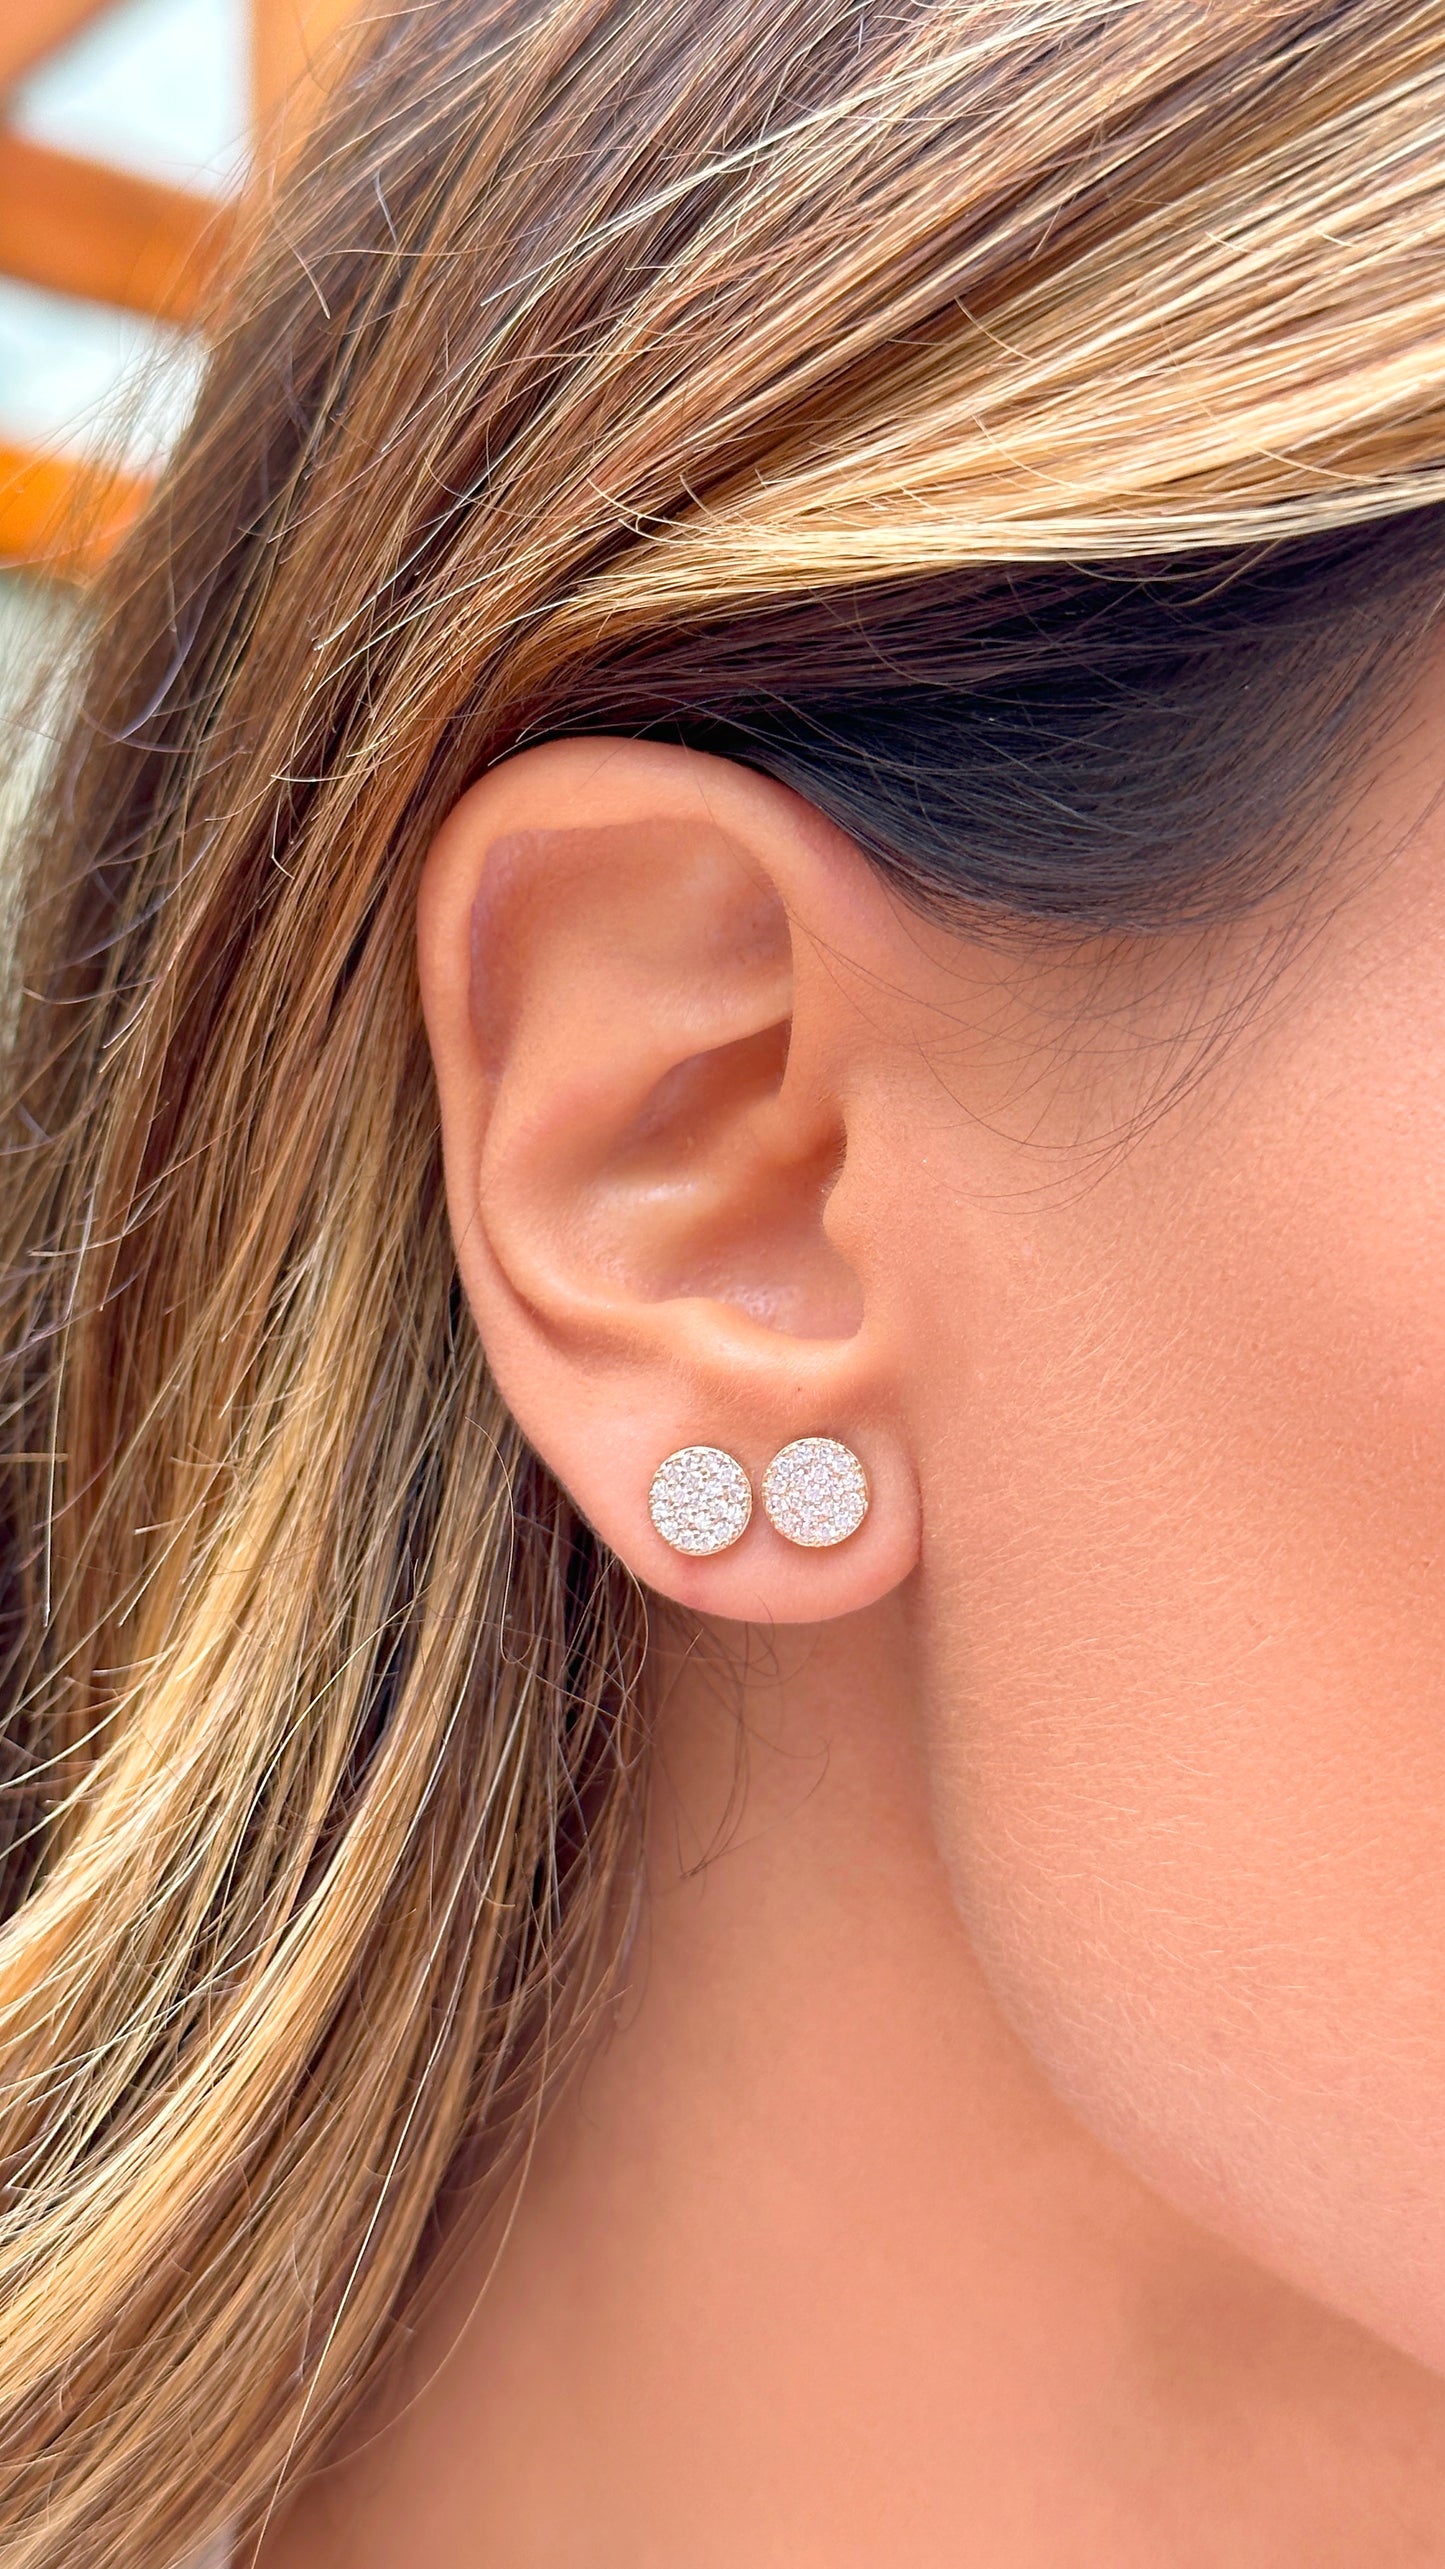 Round stud earrings